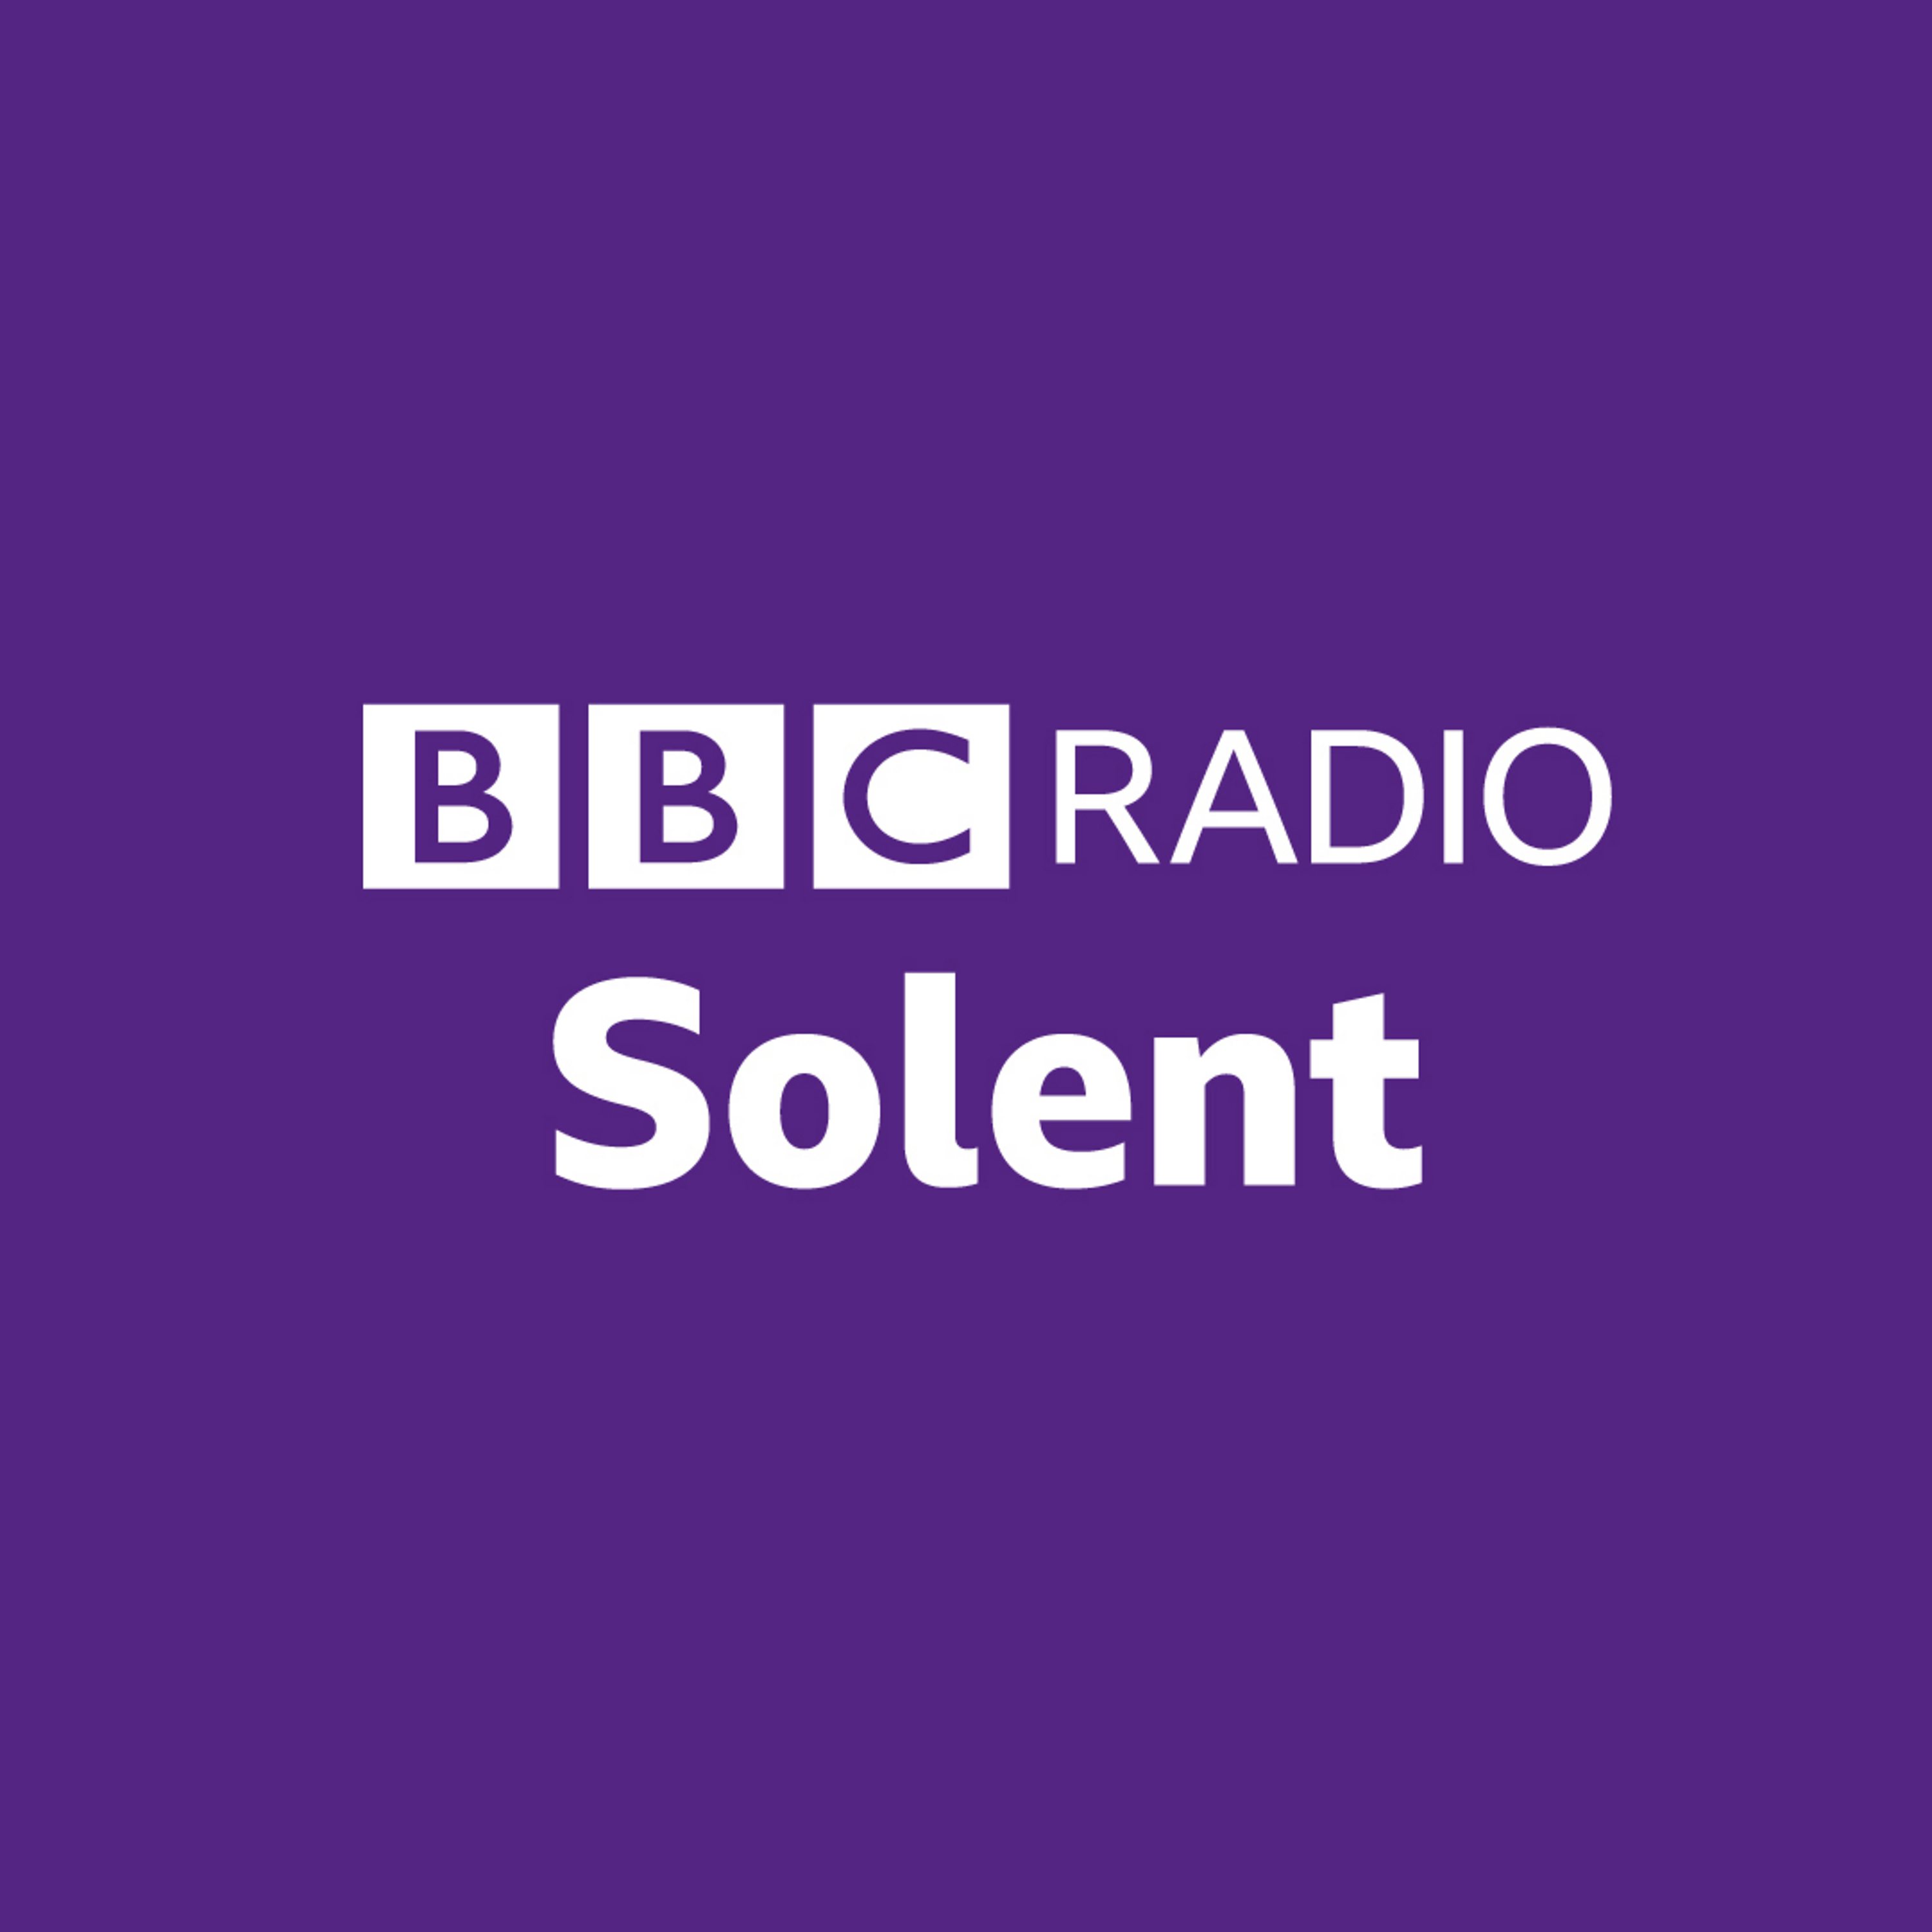 BBC Radio Solent update